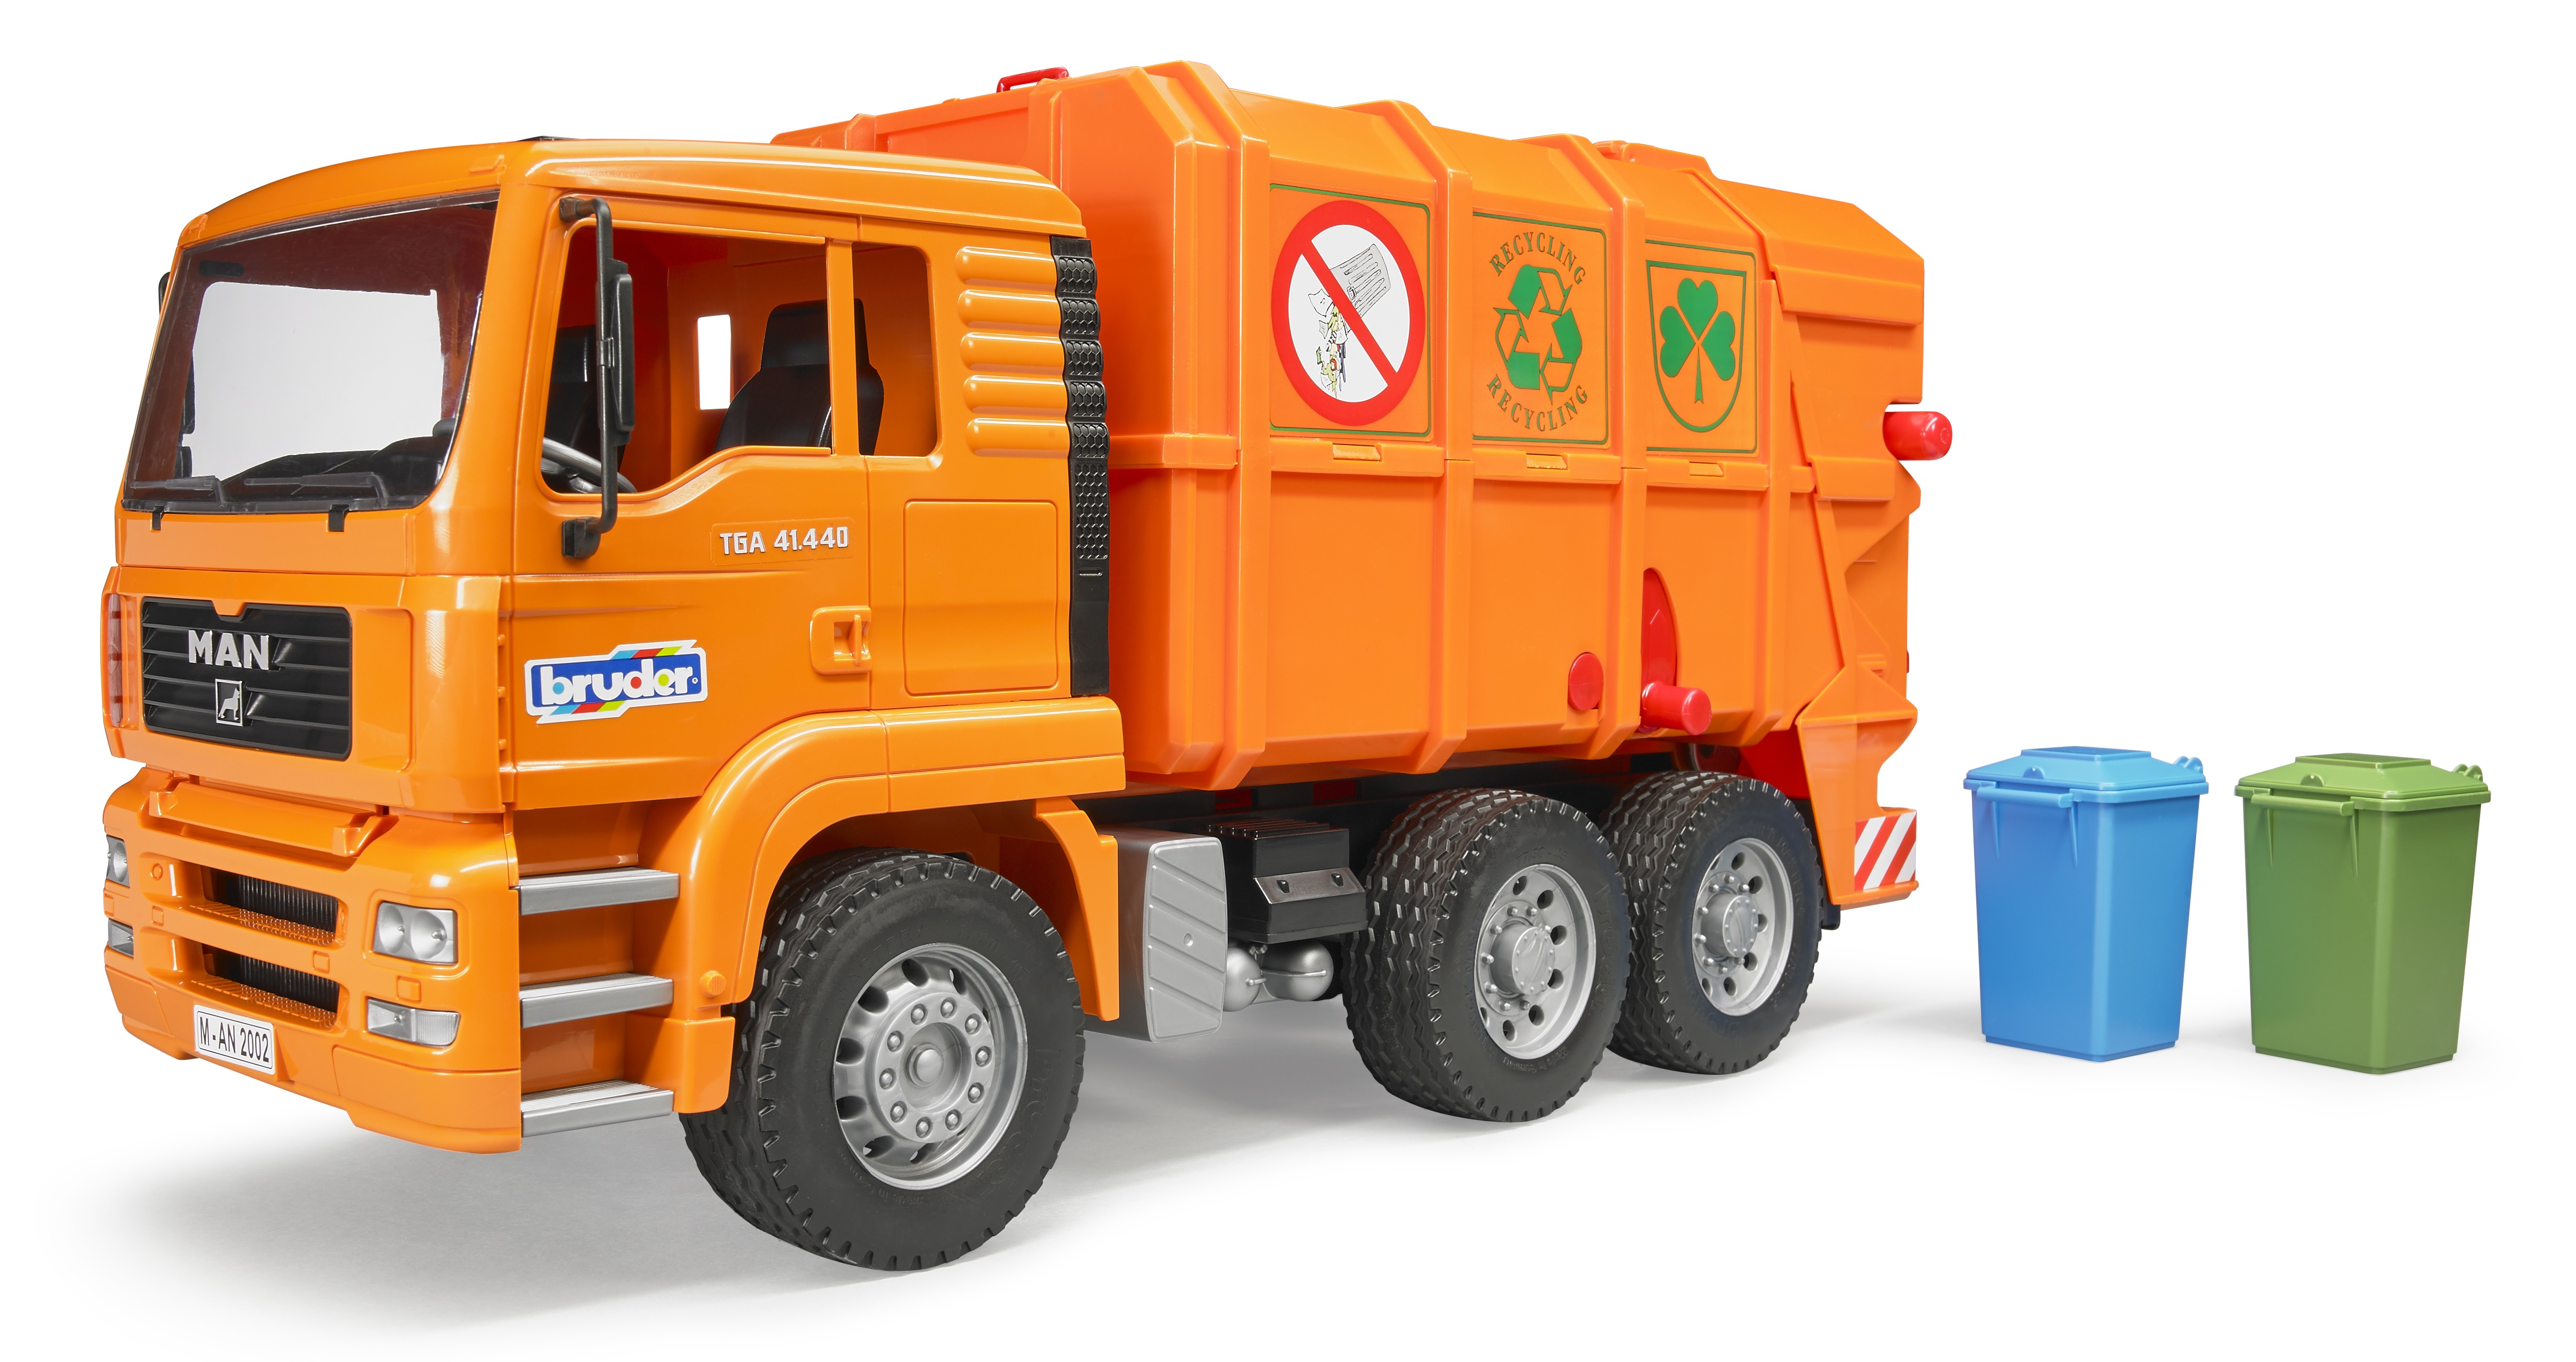 bruder garbage truck orange